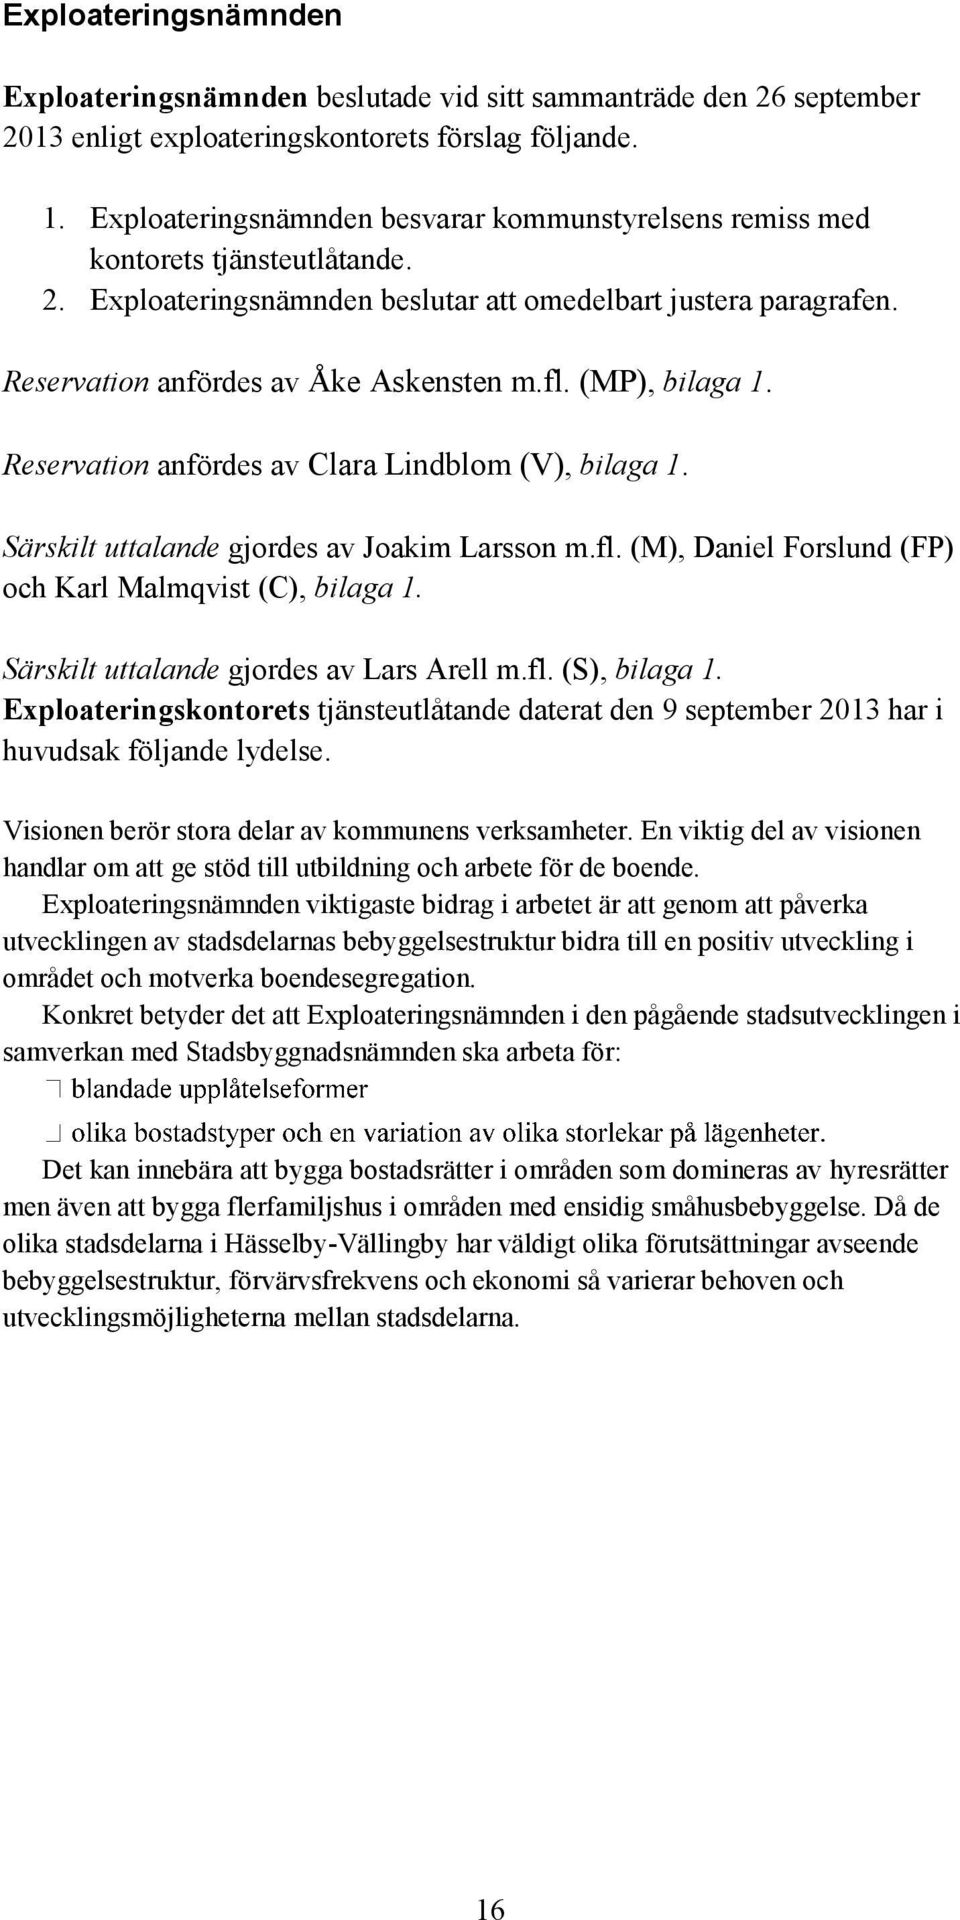 (MP), bilaga 1. Reservation anfördes av Clara Lindblom (V), bilaga 1. Särskilt uttalande gjordes av Joakim Larsson m.fl. (M), Daniel Forslund (FP) och Karl Malmqvist (C), bilaga 1.